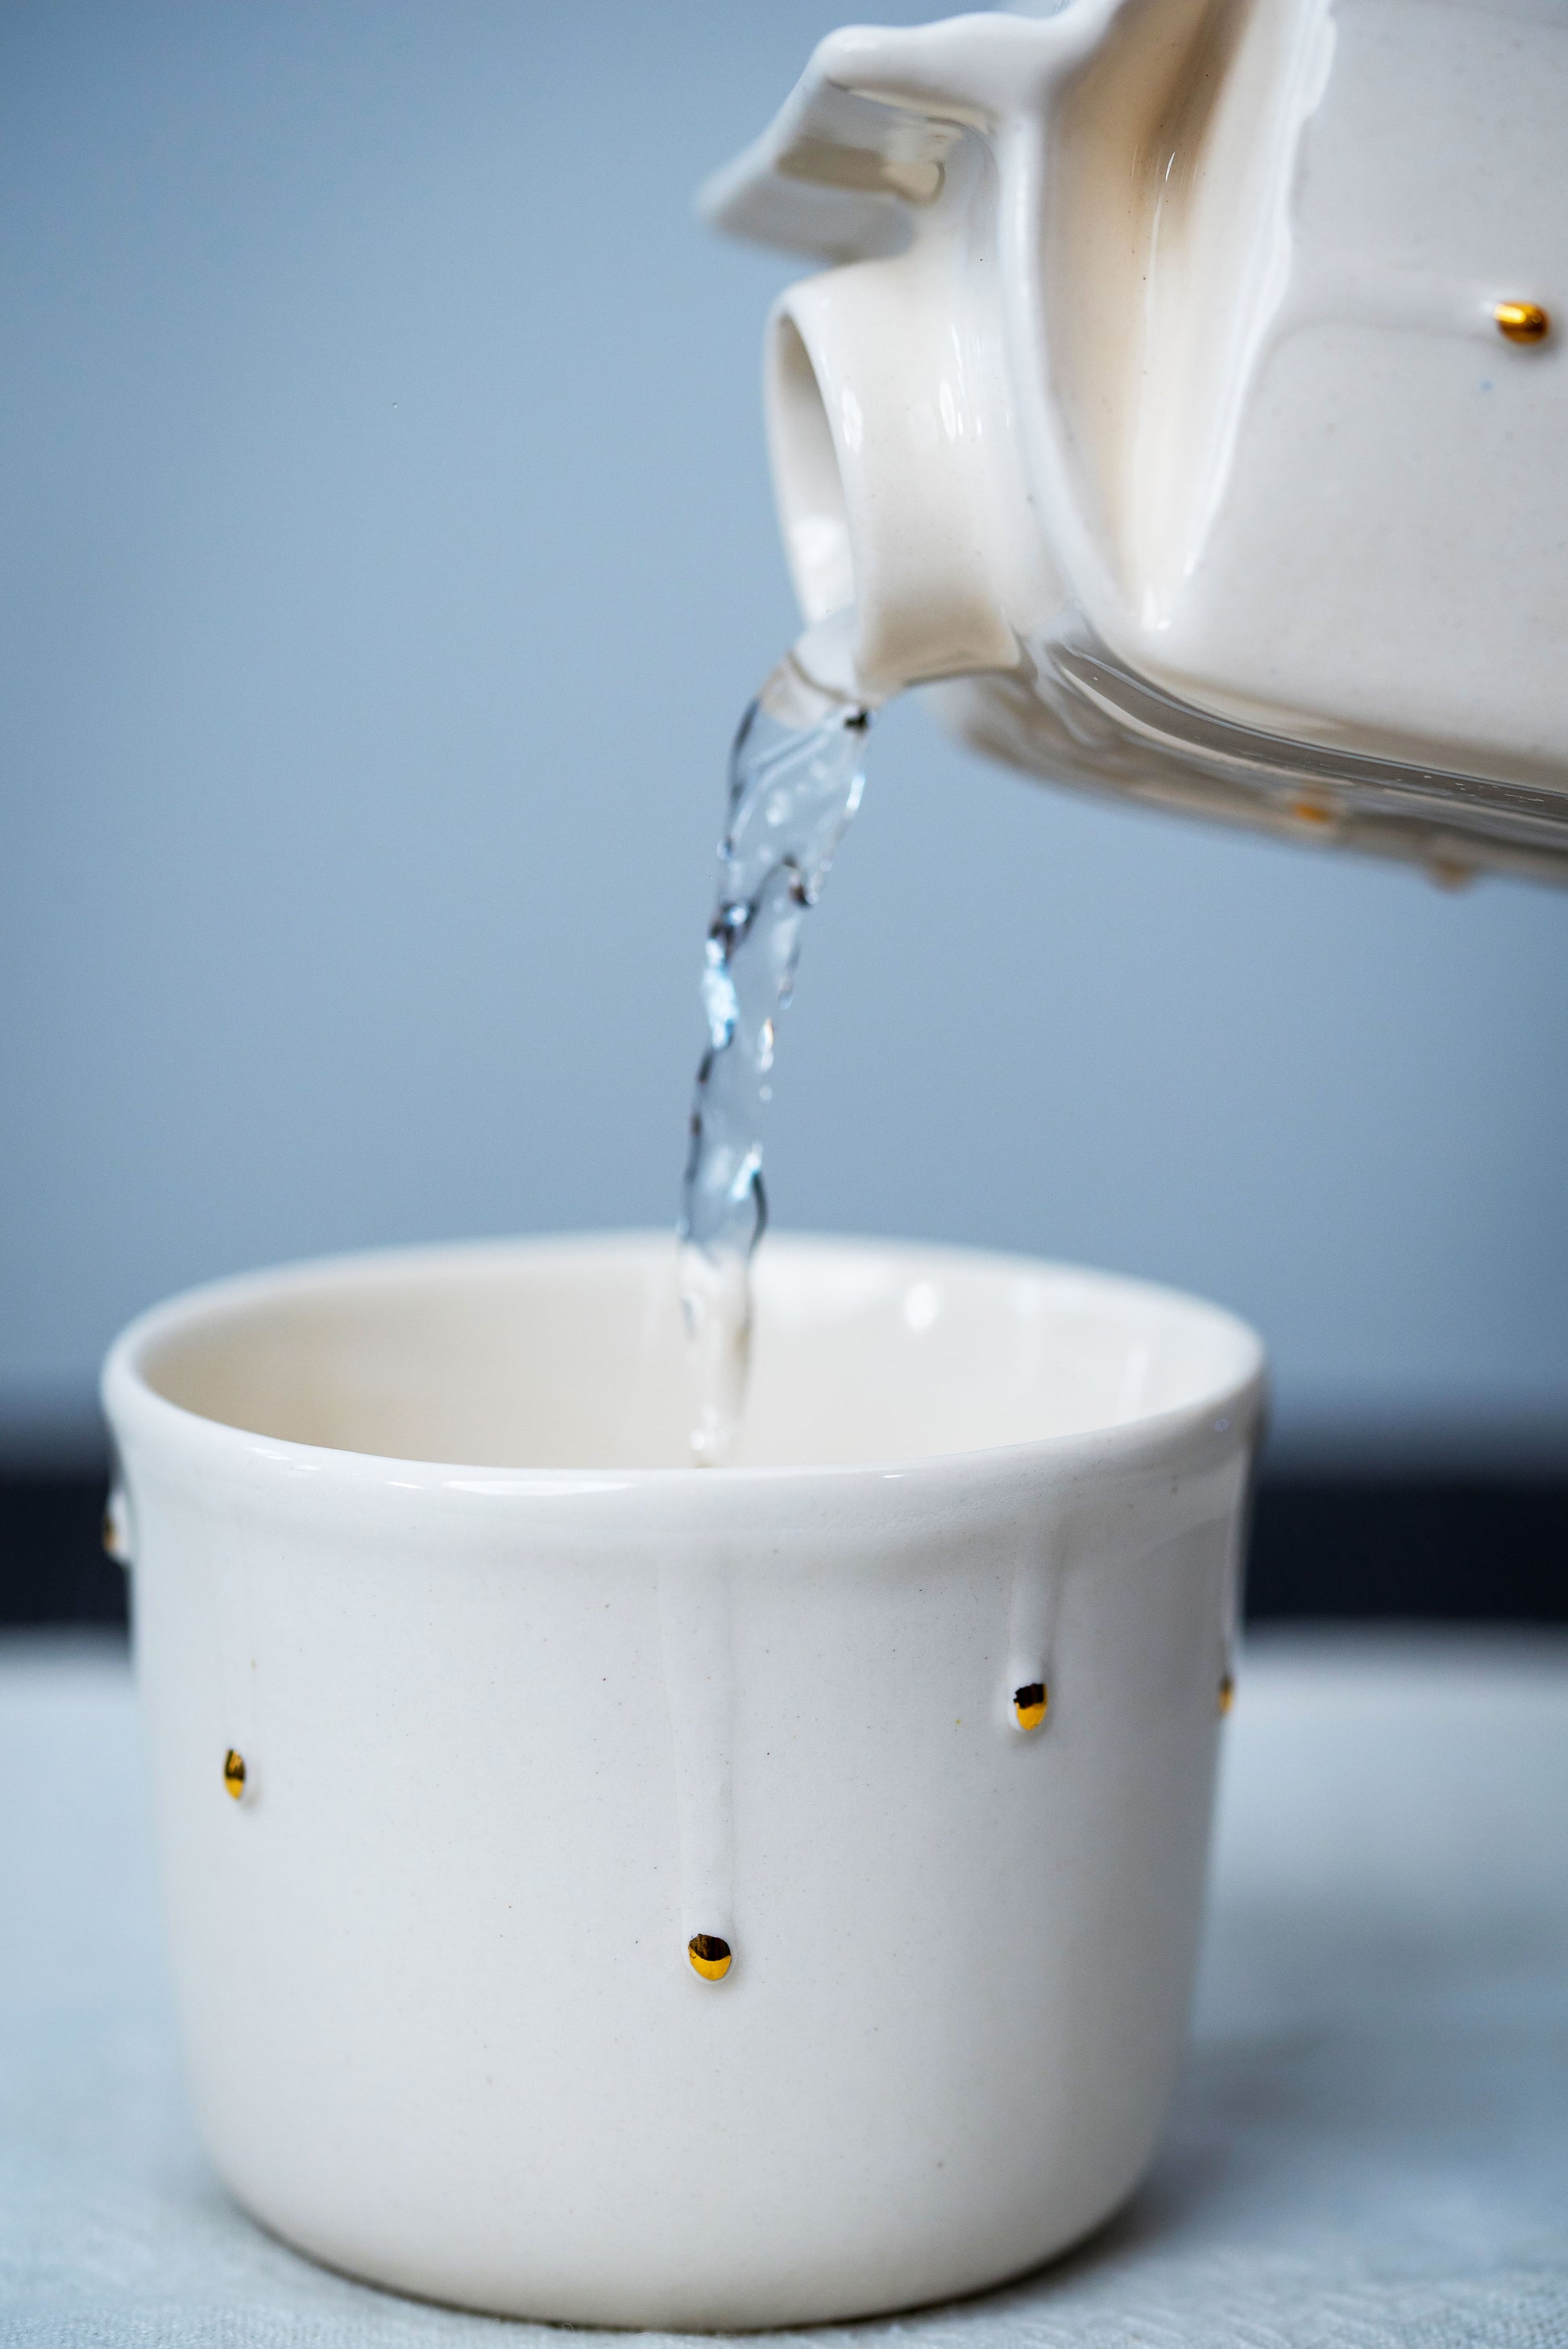 Luxury porcelain cup - Golden drops - ZLATNAporcelain